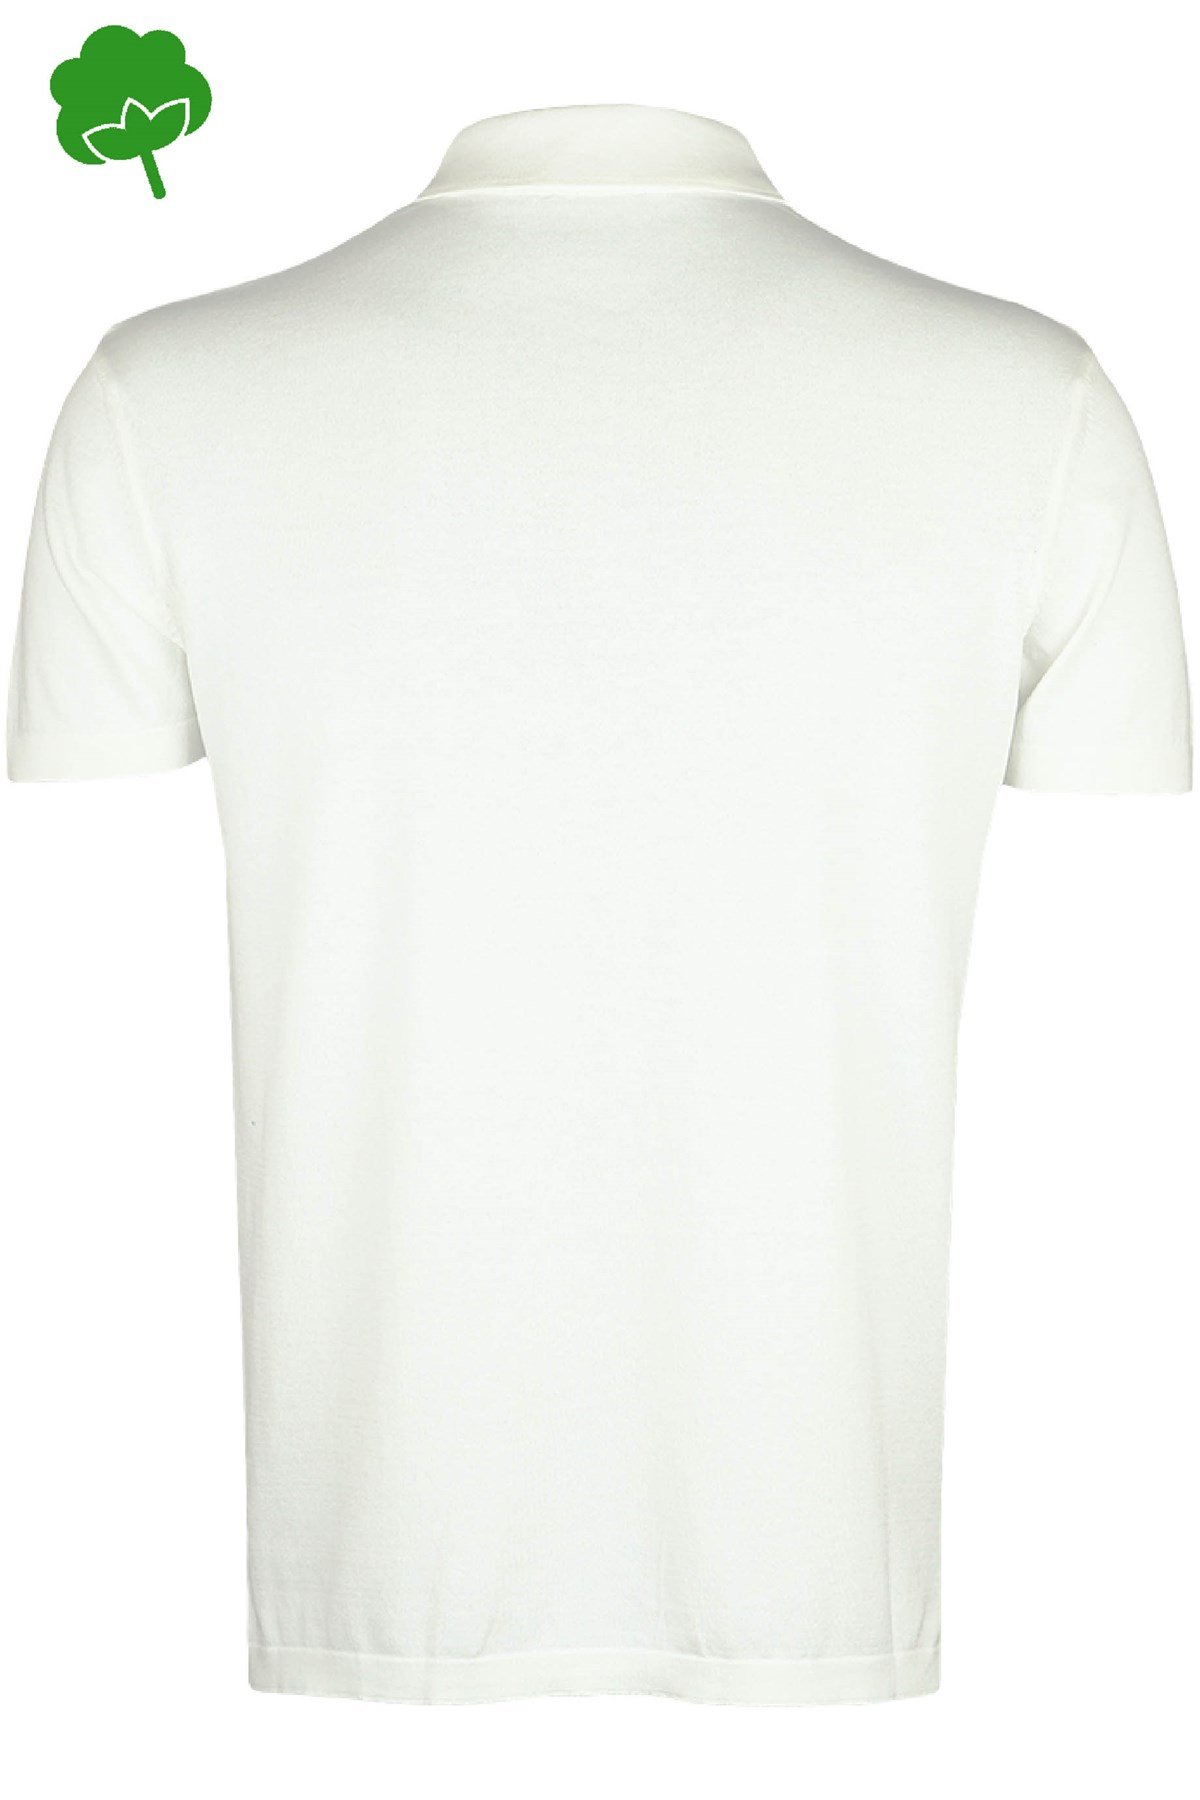 HİLAL ÖRME - %100 Pamuk Beyaz Çıtçıtlı Polo Yaka Triko Tişört